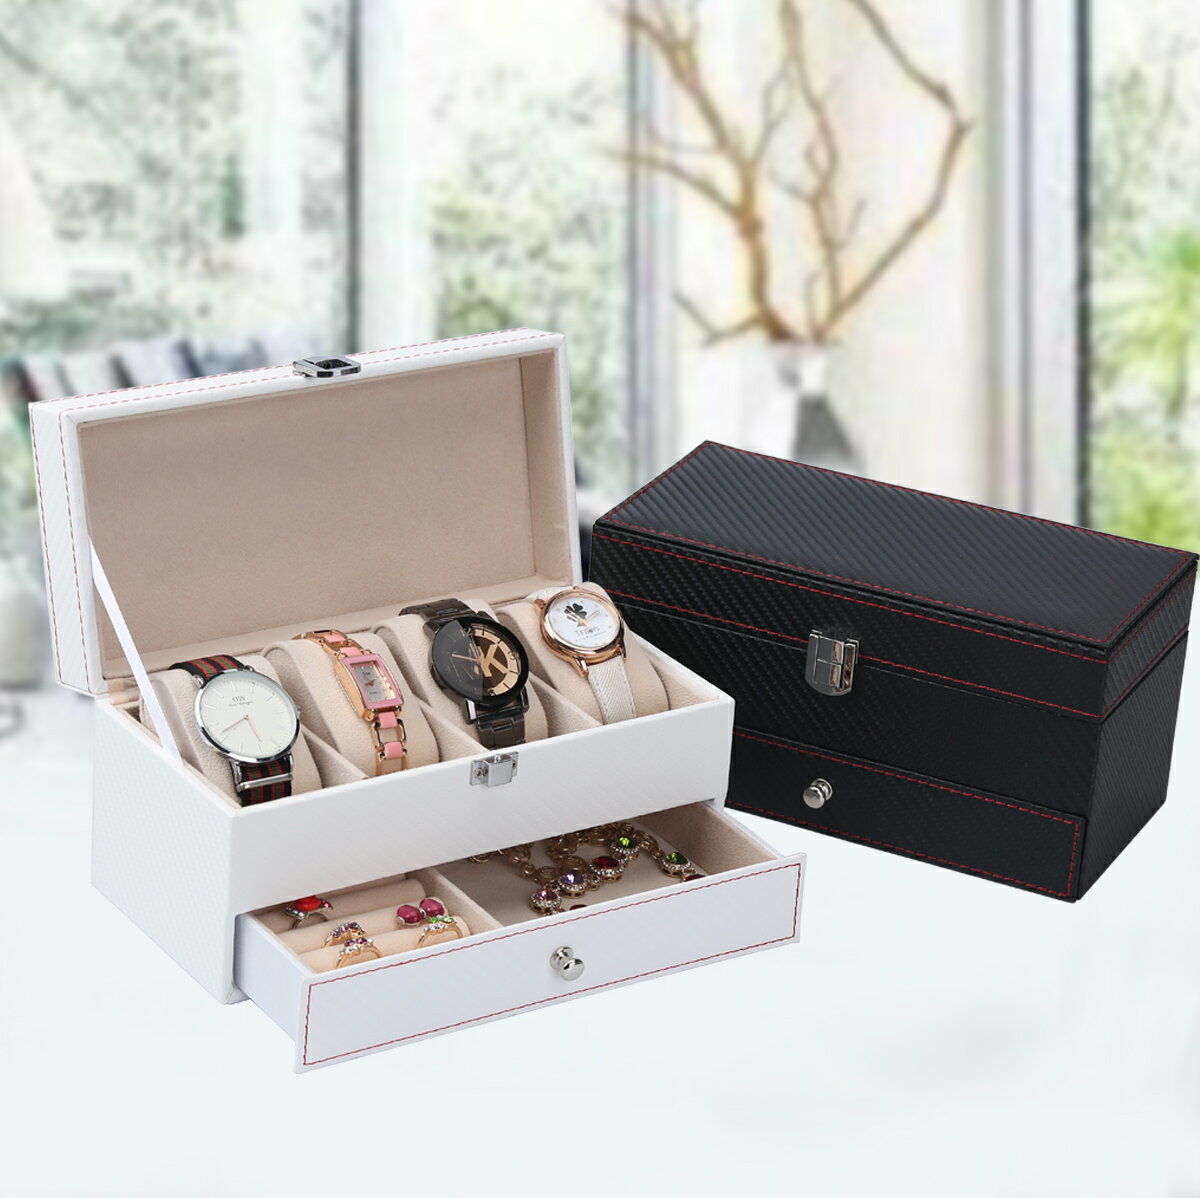 手錶盒 碳纖維雙層首飾盒公主 歐式韓國飾品收納盒簡約收拾收納盒手錶盒【MJ3894】